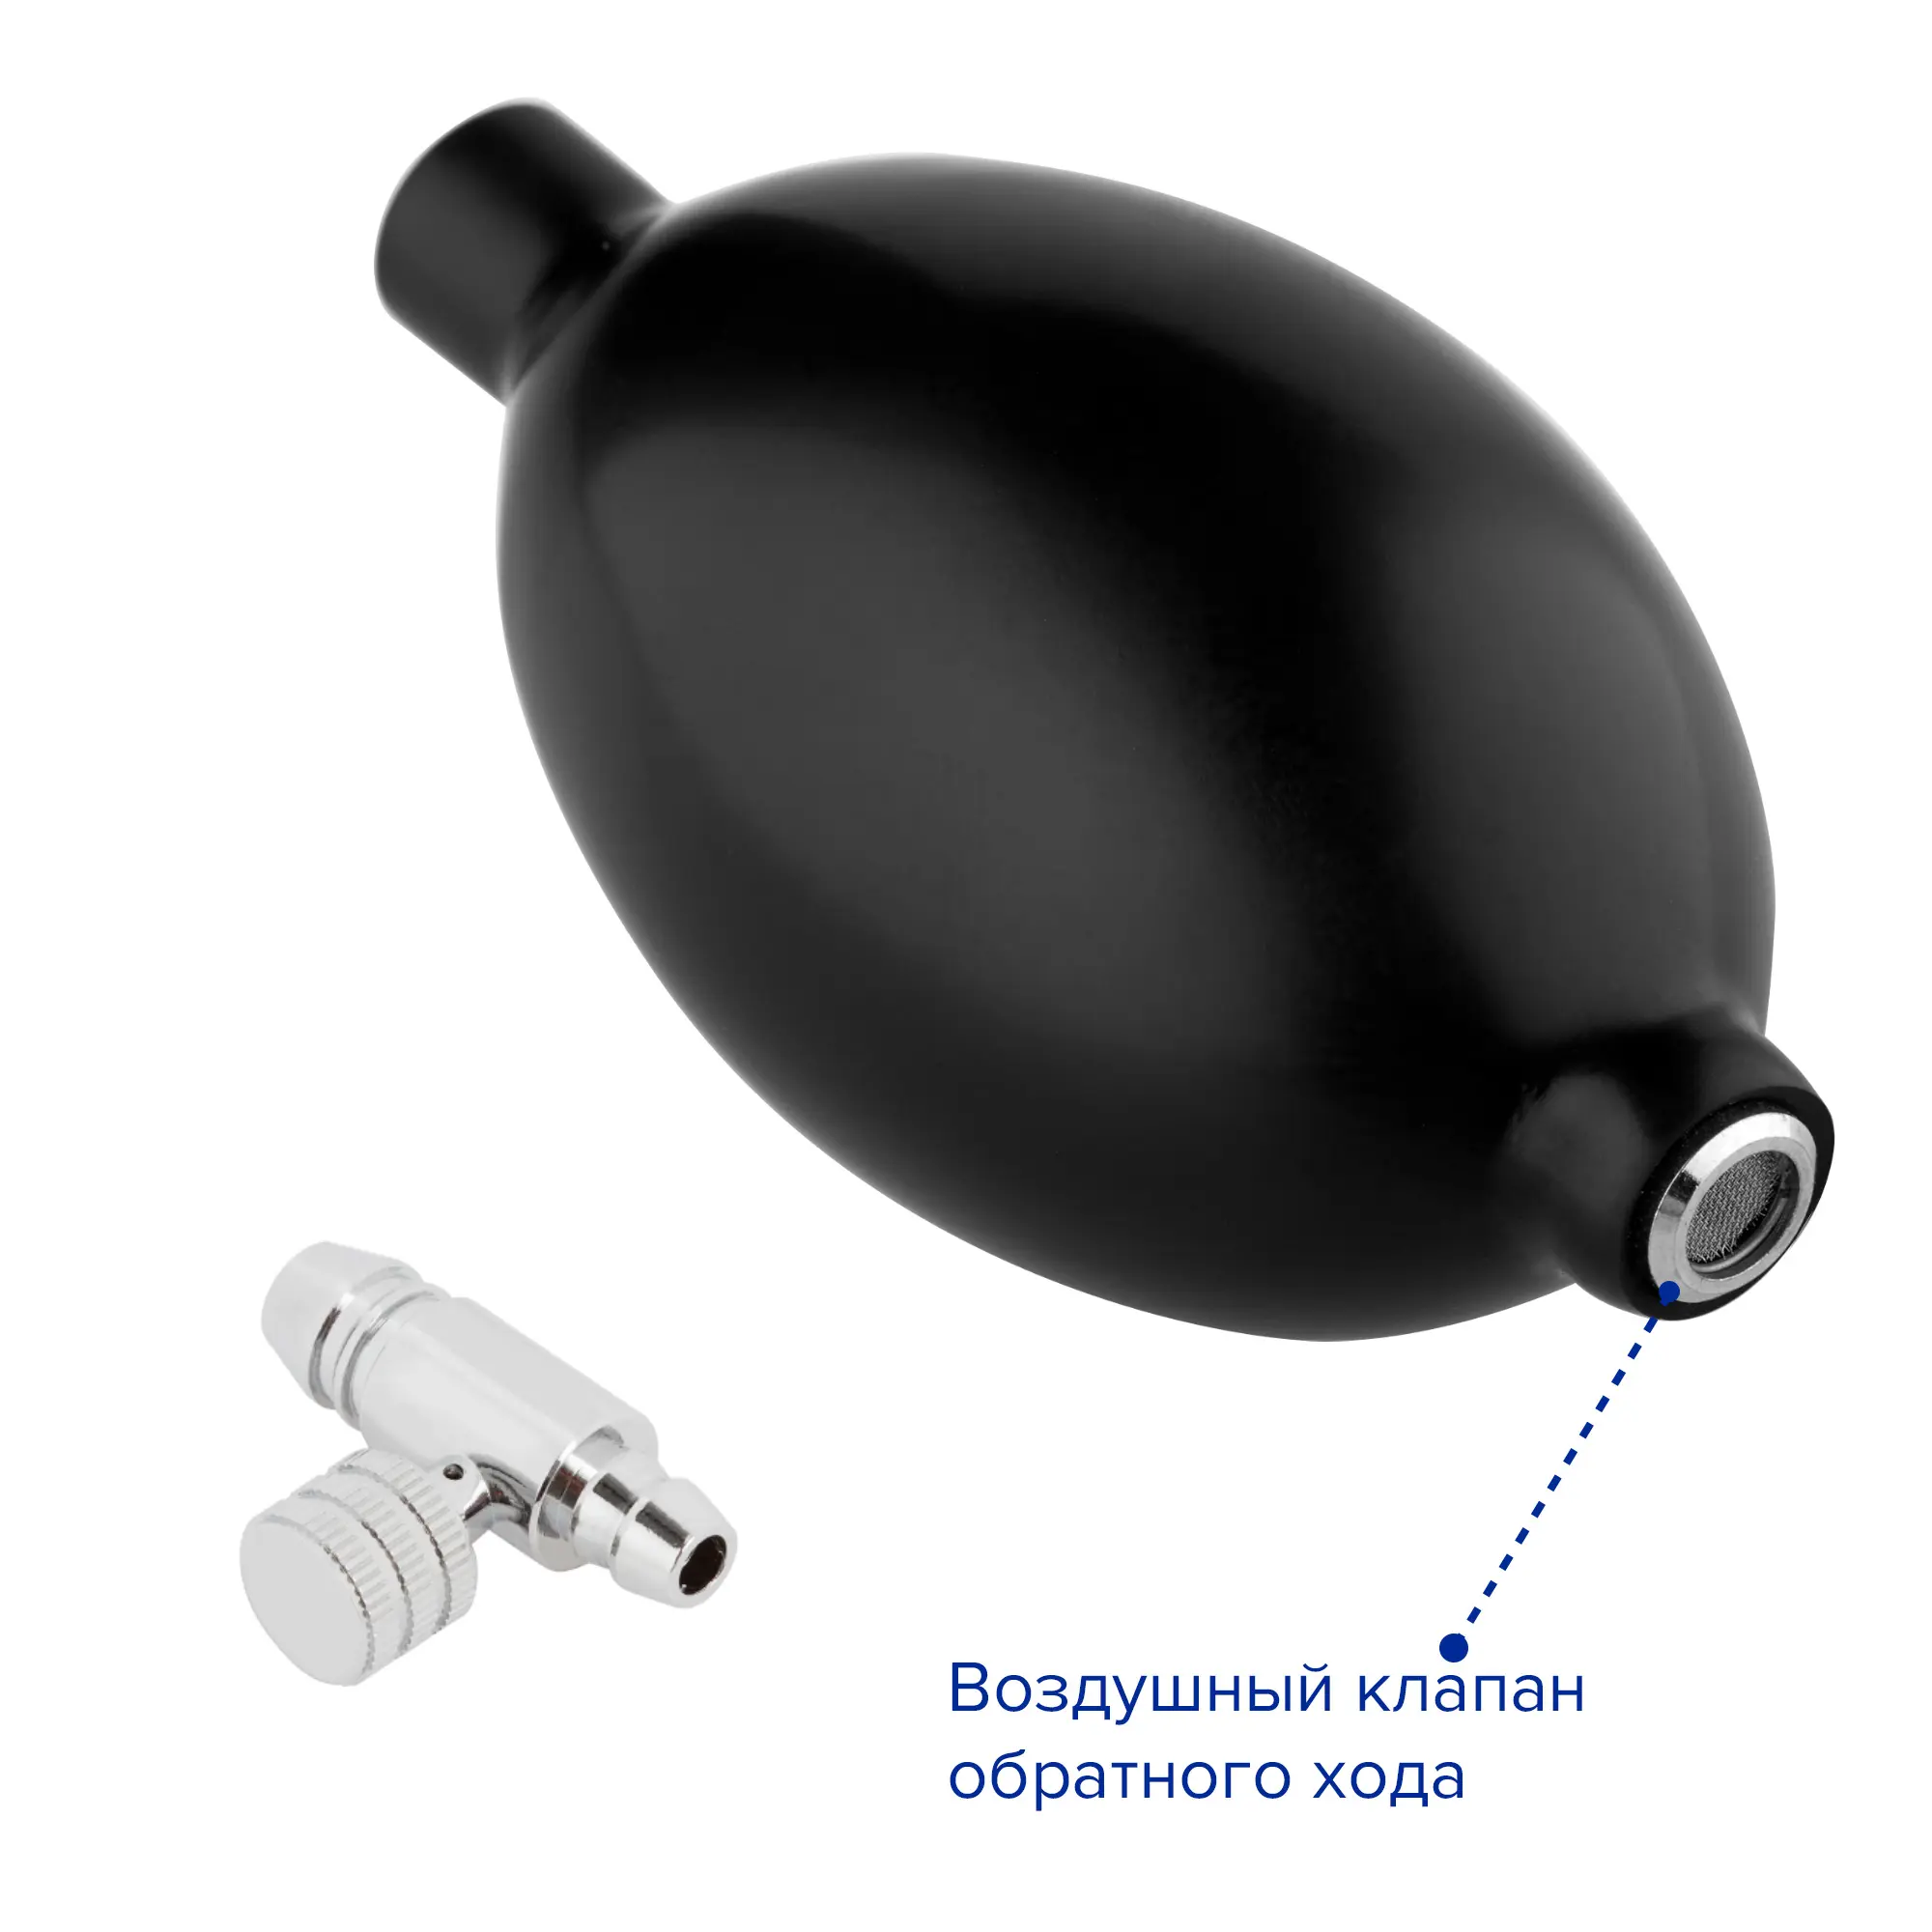 Груша для тонометра и воздушный клапан с вентилем, Apexmed